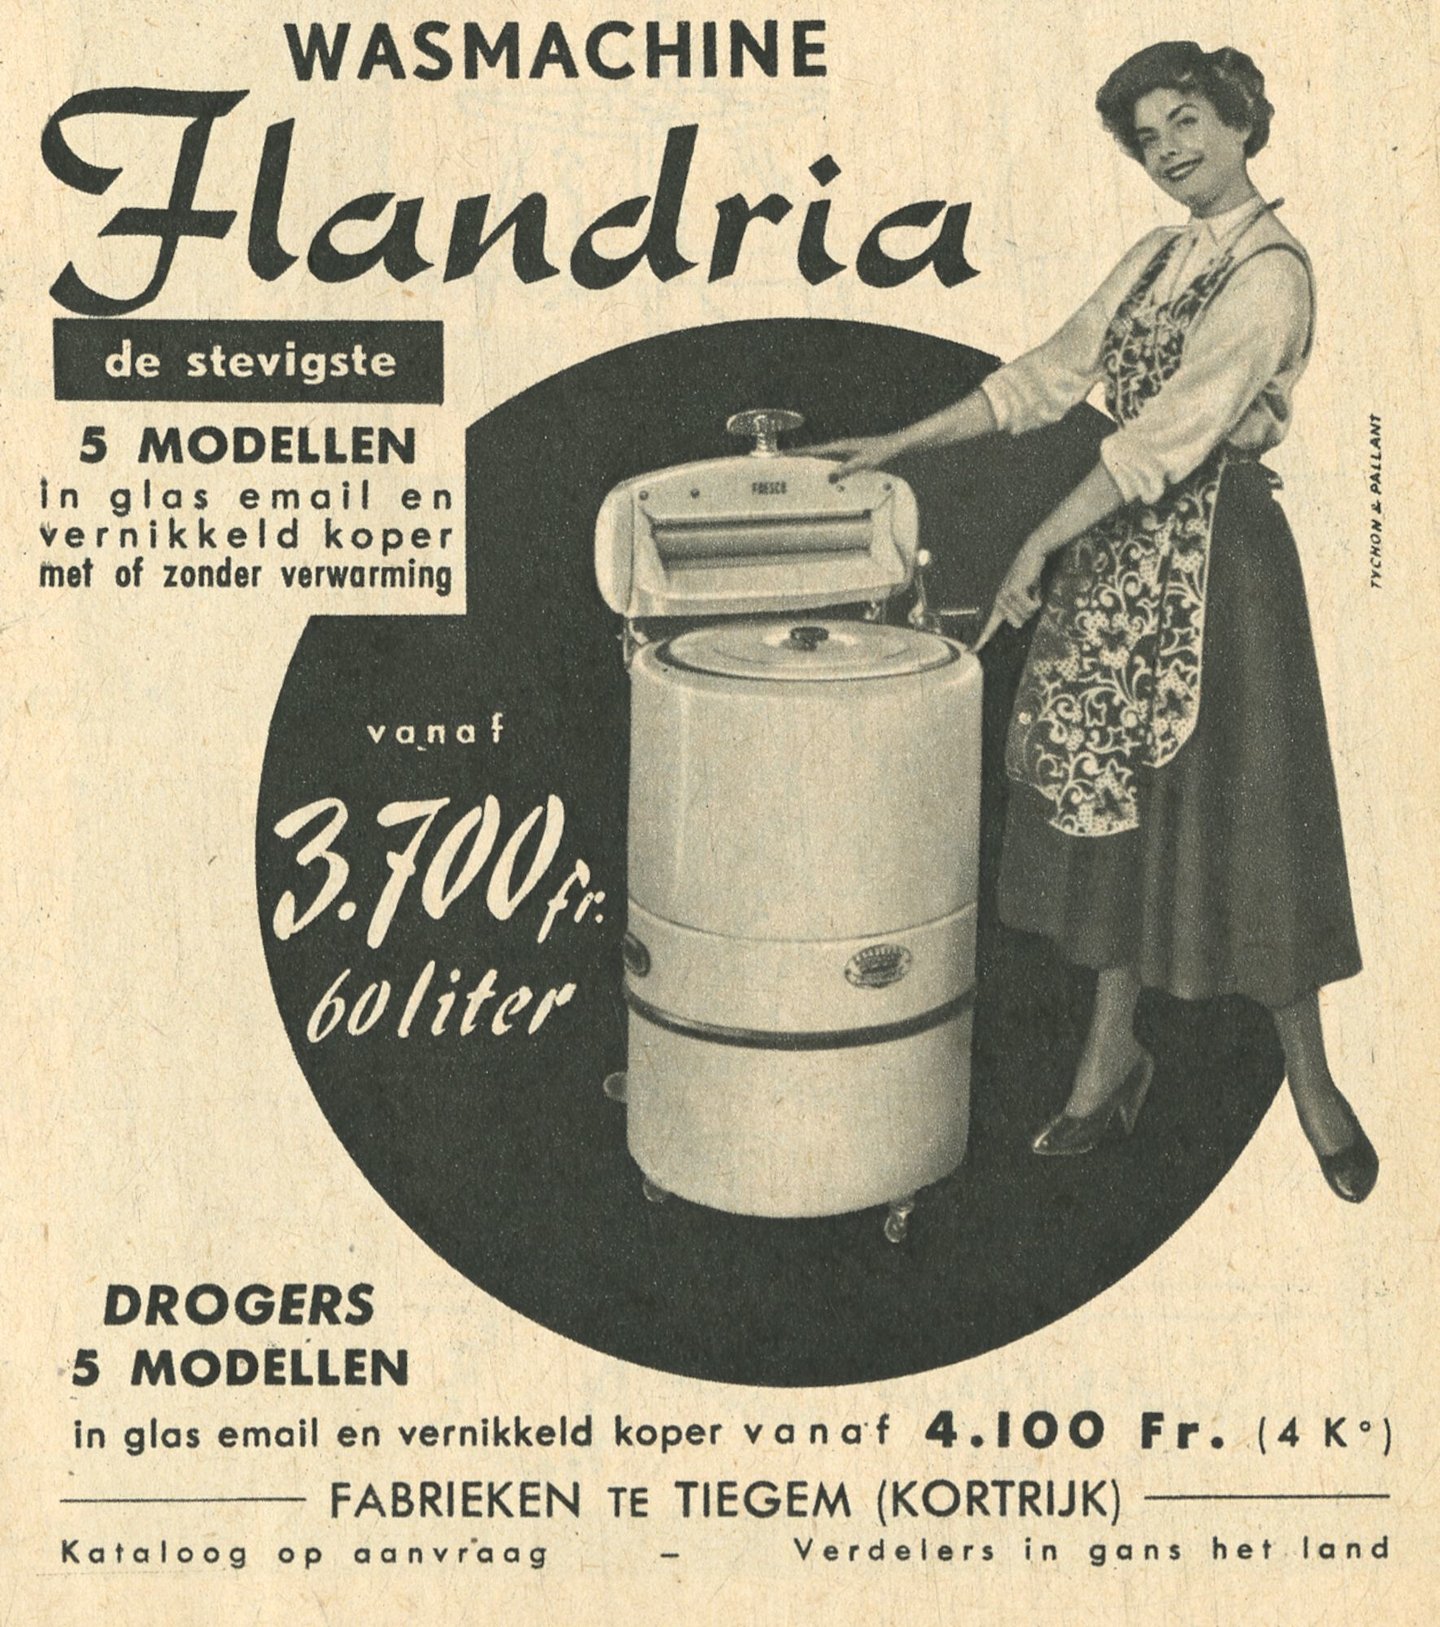 Reclame voor wasmachine van het merk Flandria